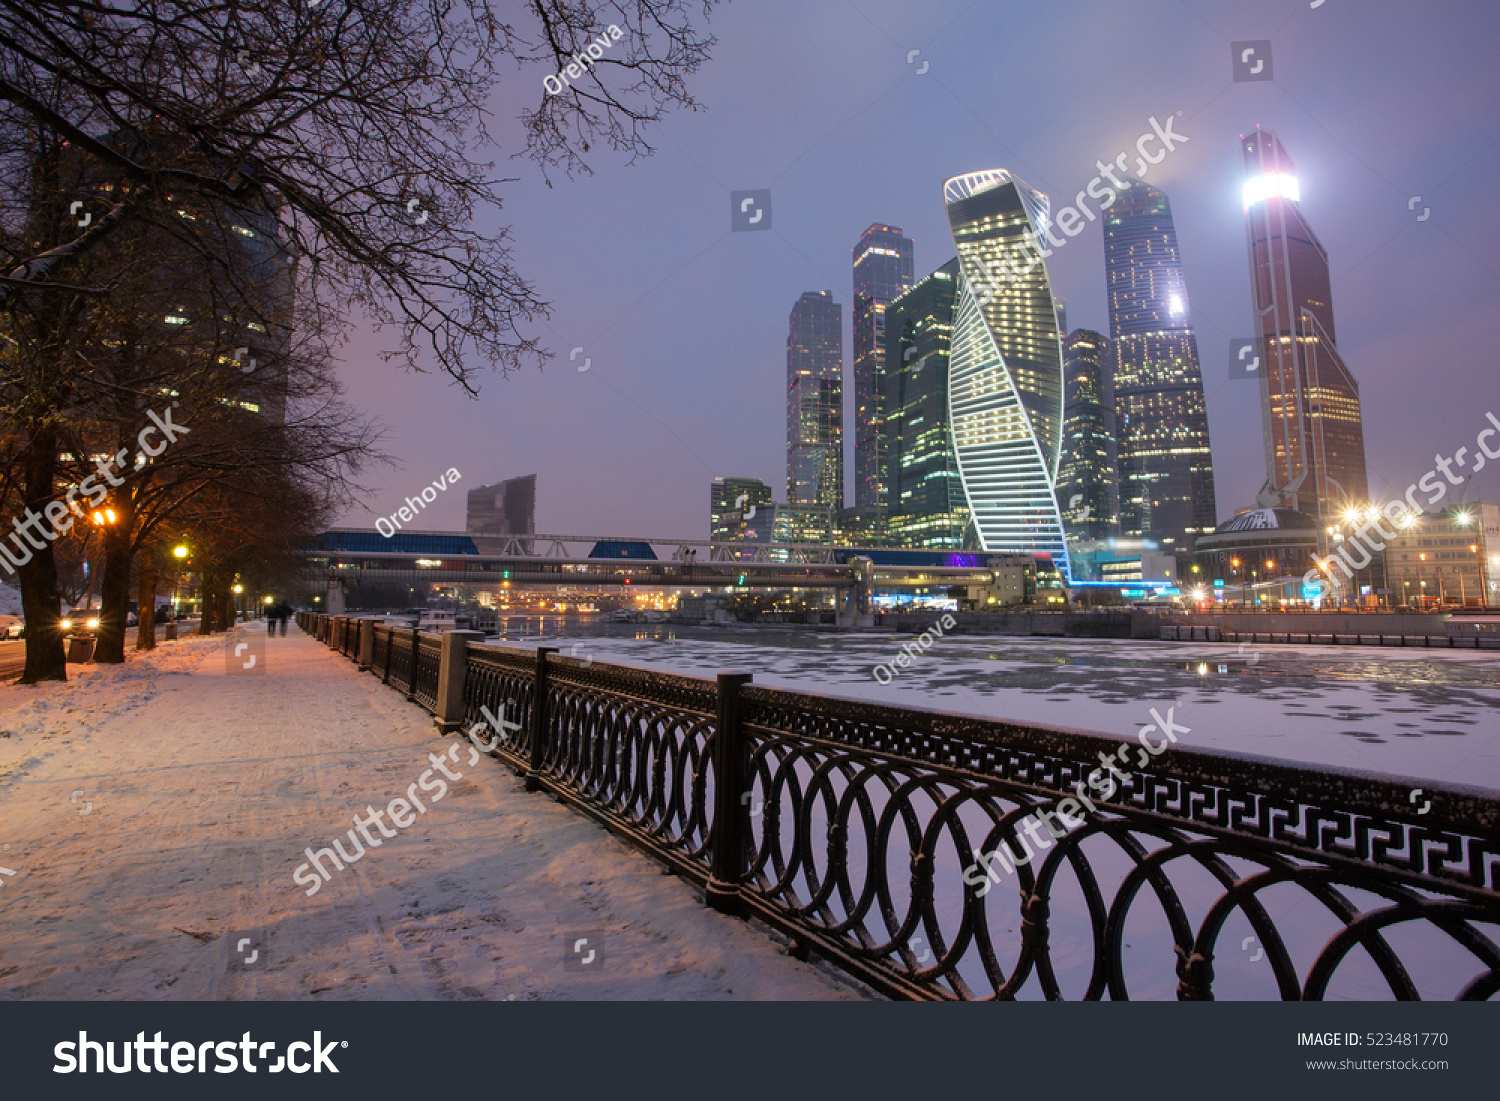 фото москвы зимой любительские